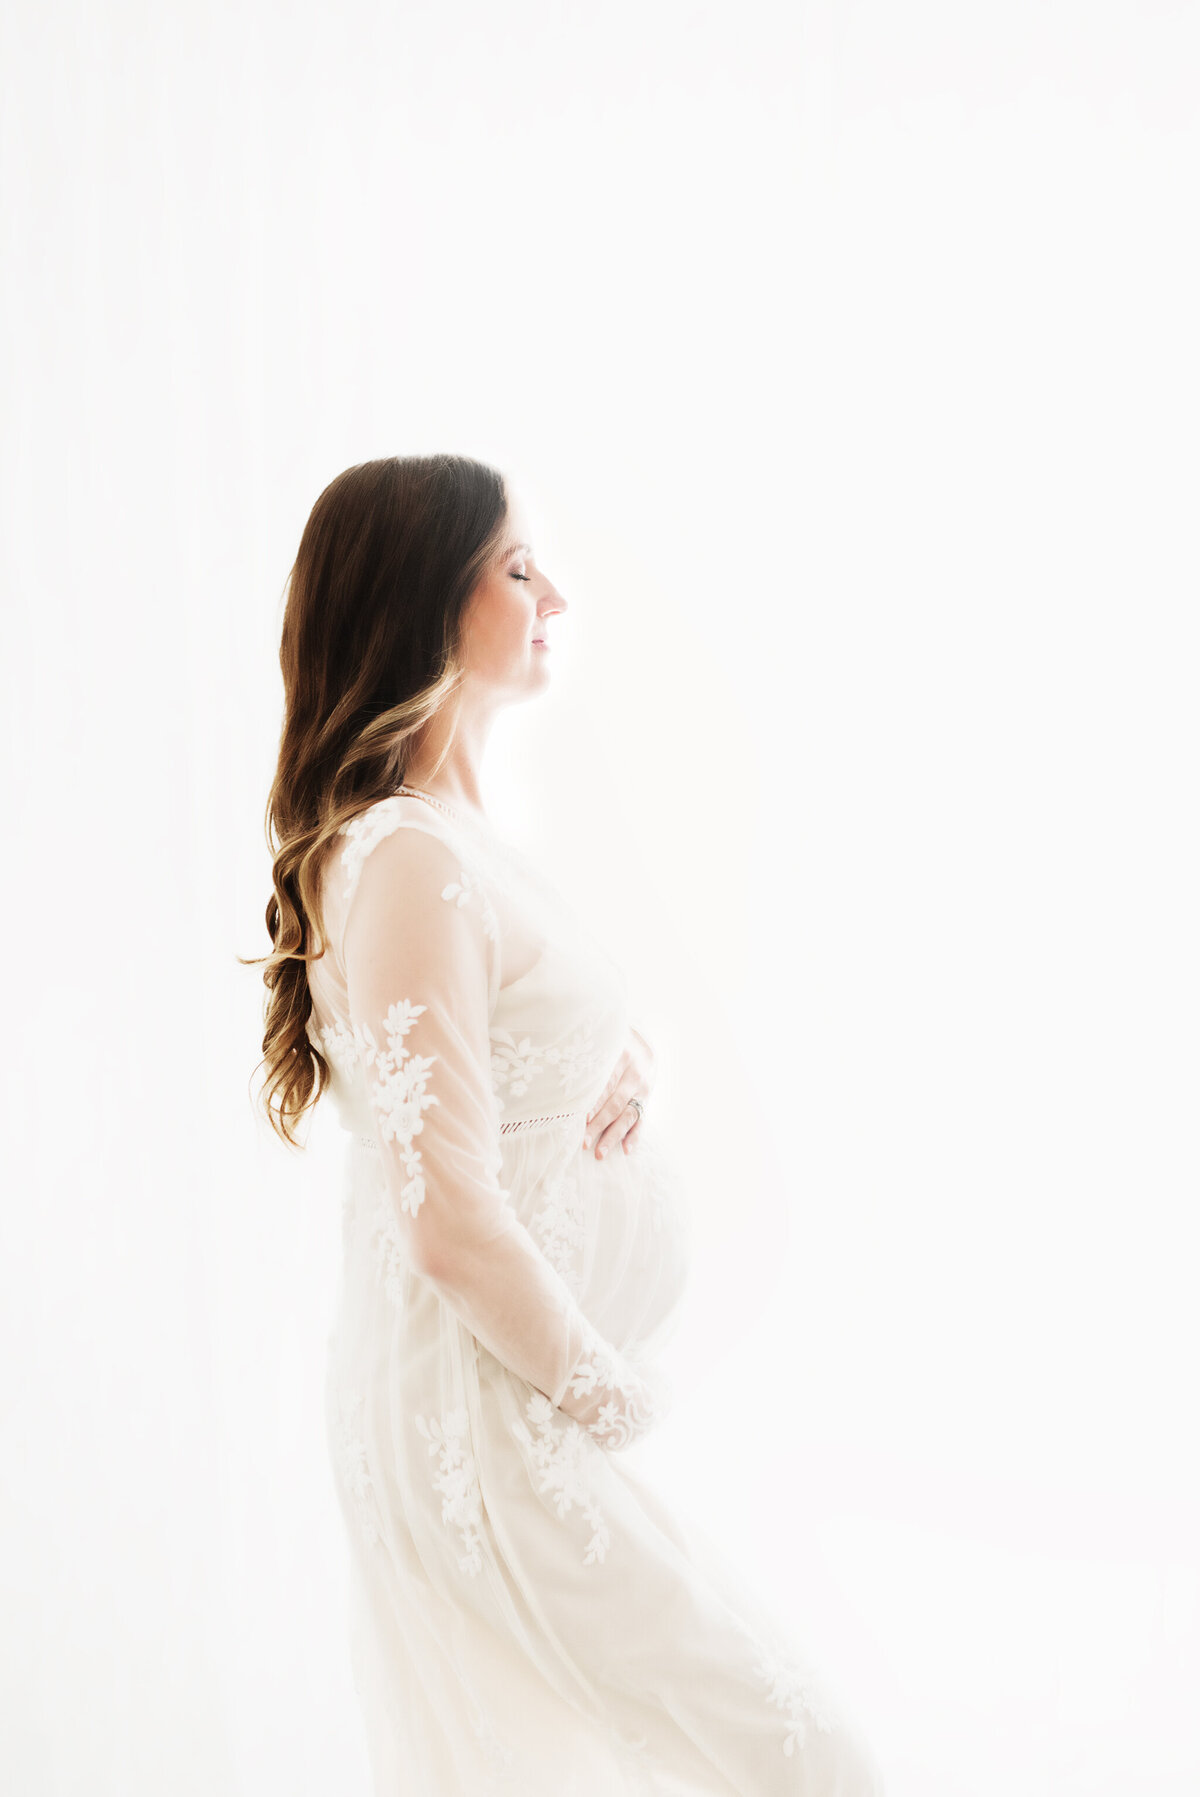 Houston Maternity Studio - white dress